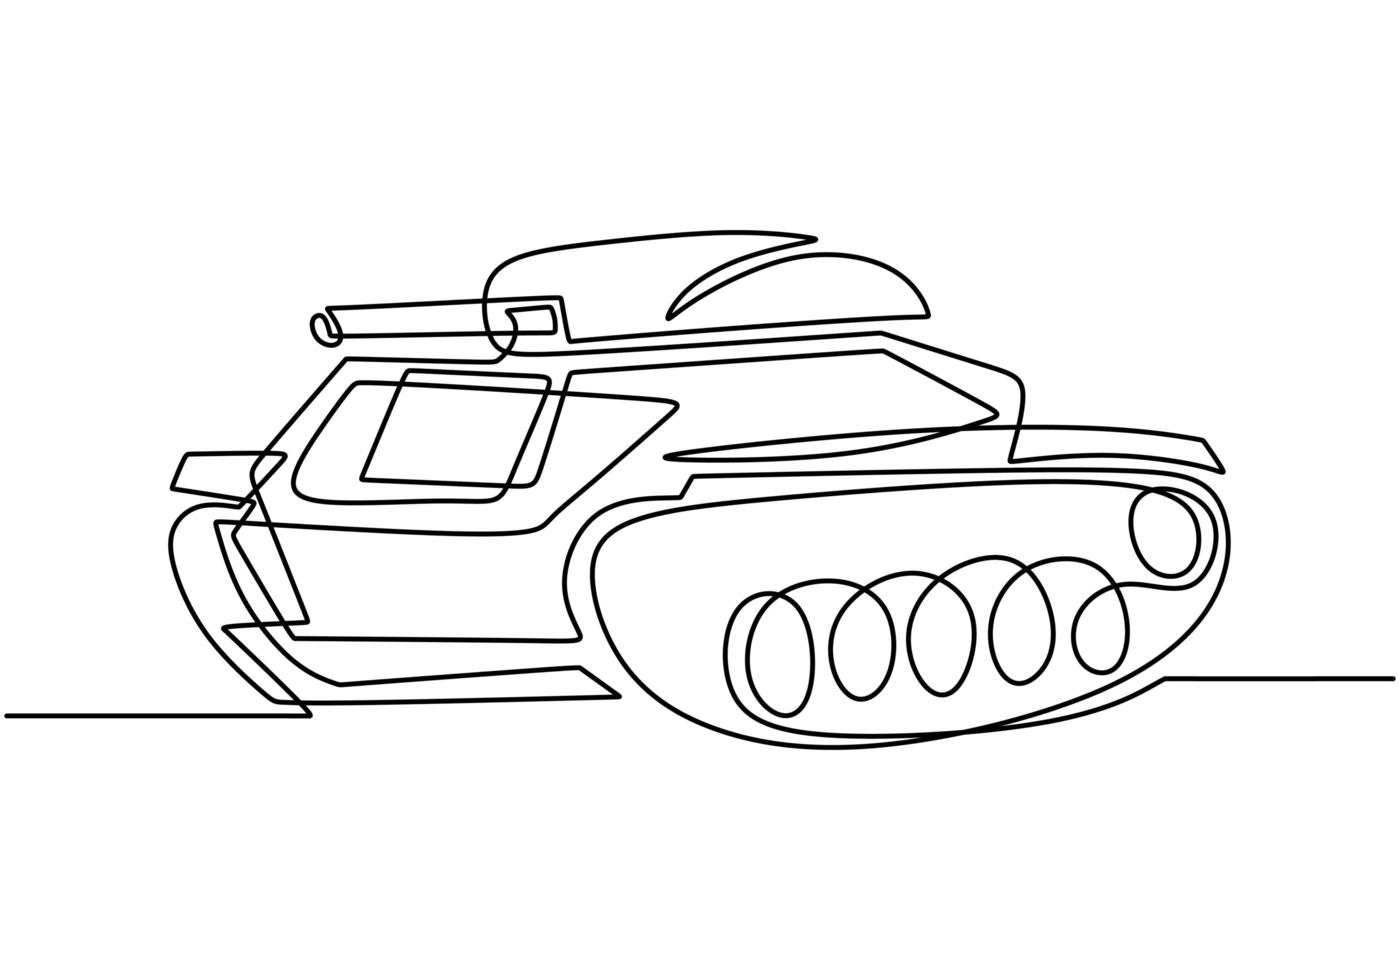 eine durchgehende Strichzeichnung des Tanks. ein gepanzertes Kampffahrzeug für Frontkampf und Krieg. vektor